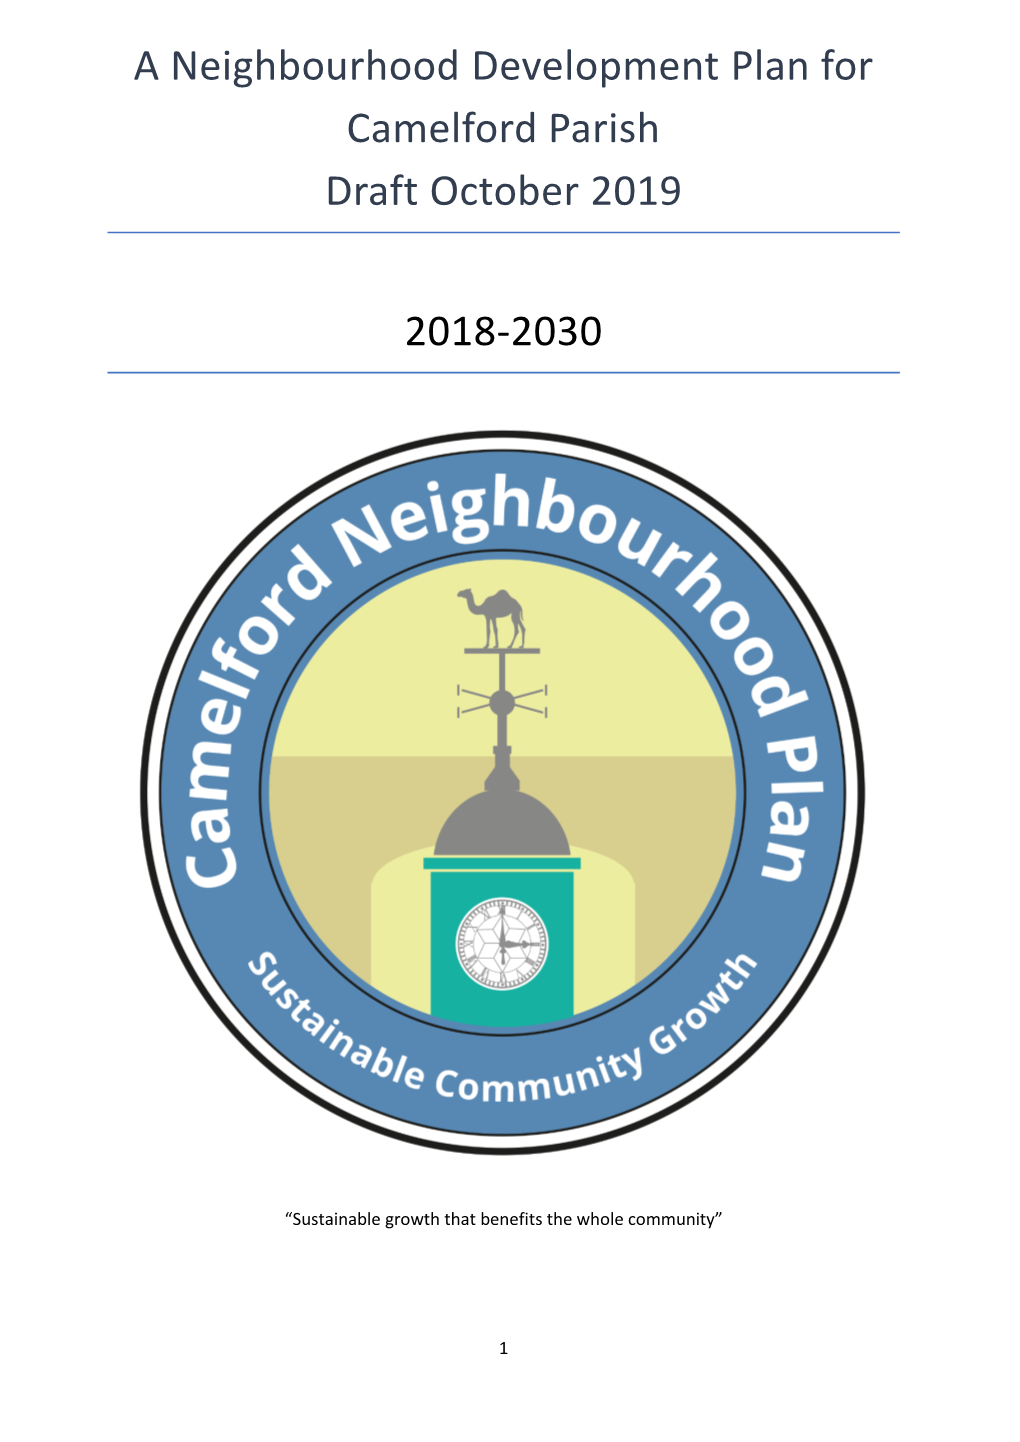 A Neighbourhood Development Plan for Camelford Parish Draft October 2019